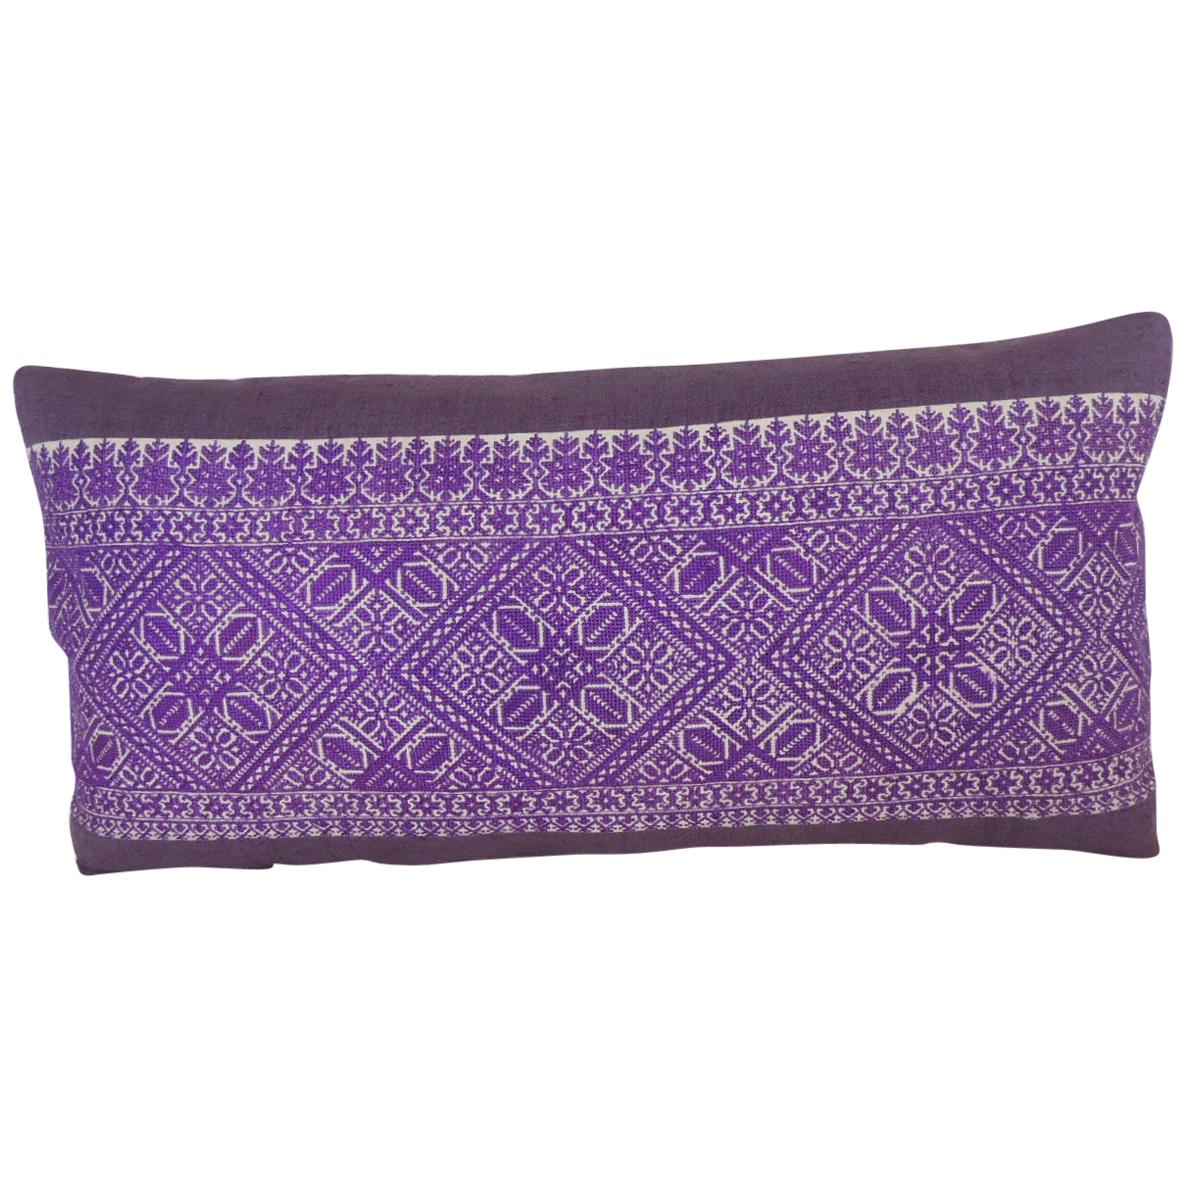 Antique Purple and White Fez Textile Long Decorative Bolster Pillow